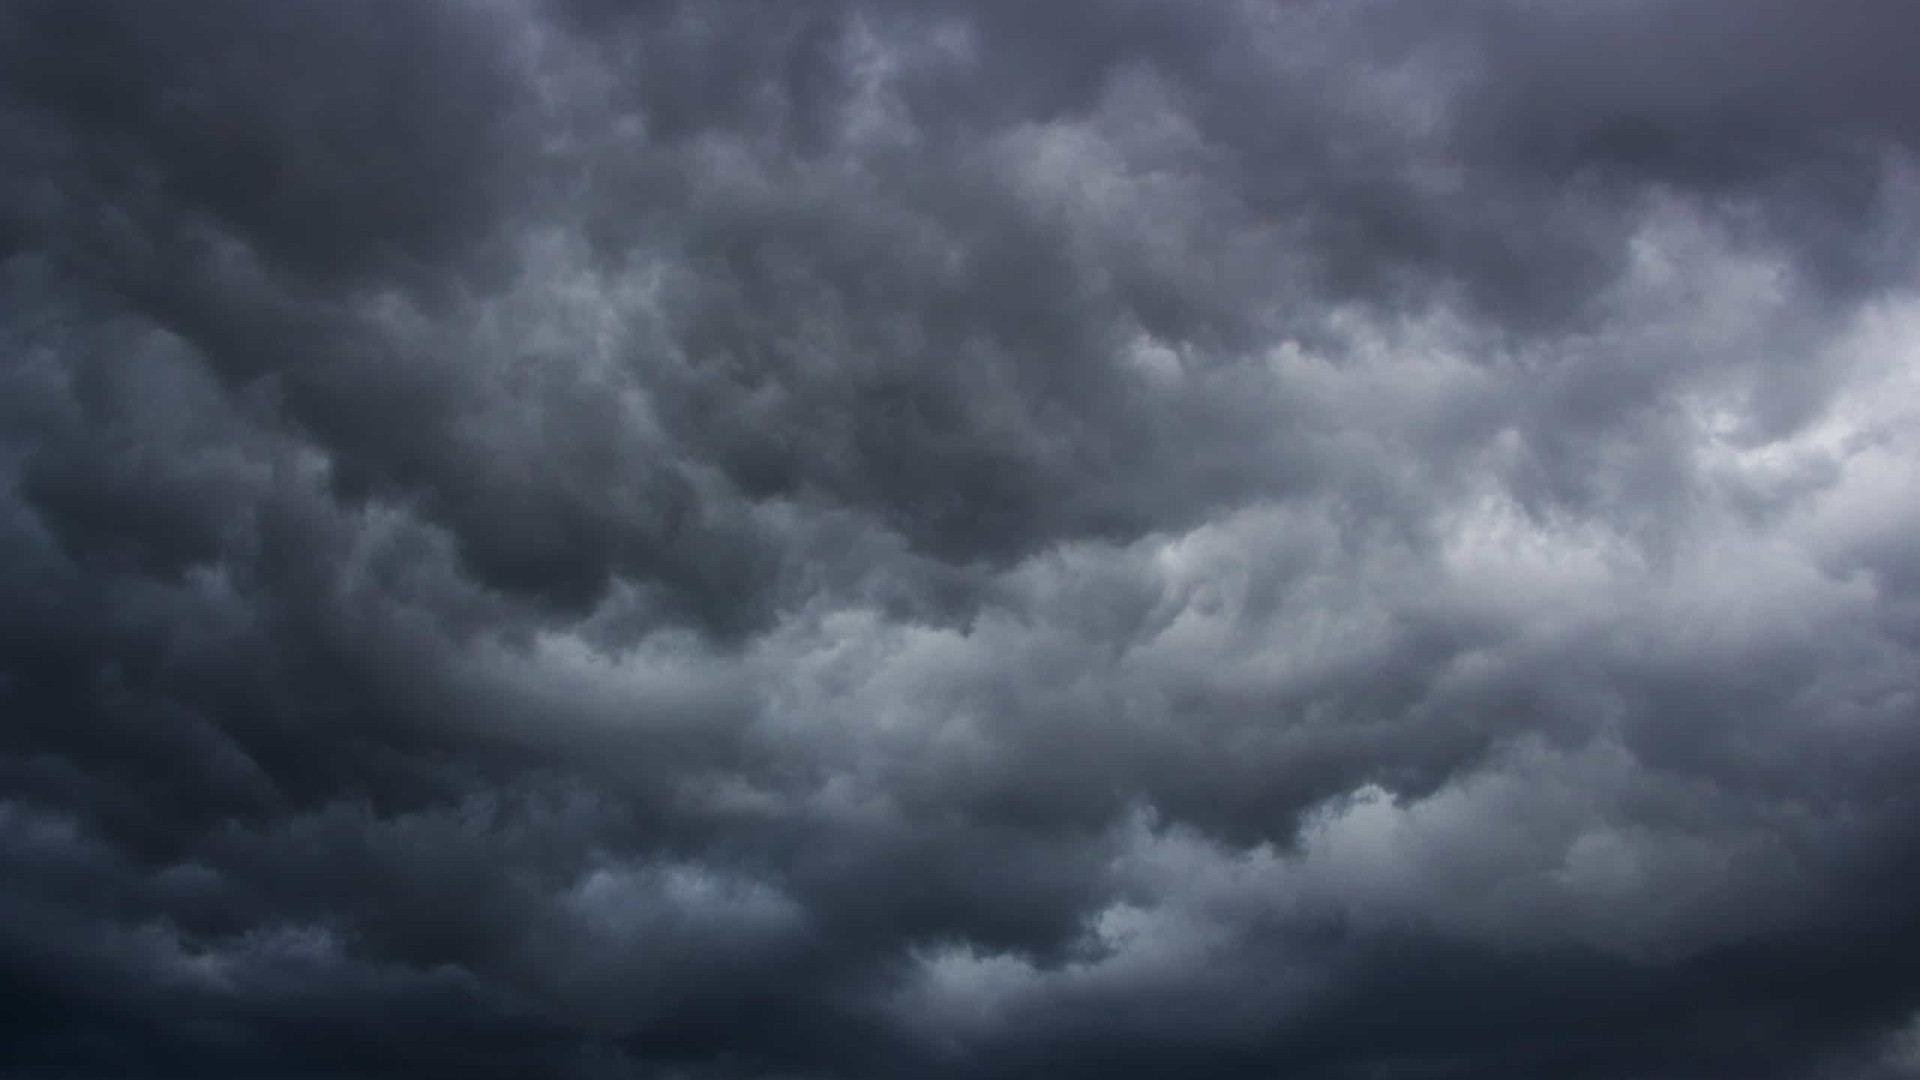 Ciclone pode causar tempestade e alagamento em vários pontos do país